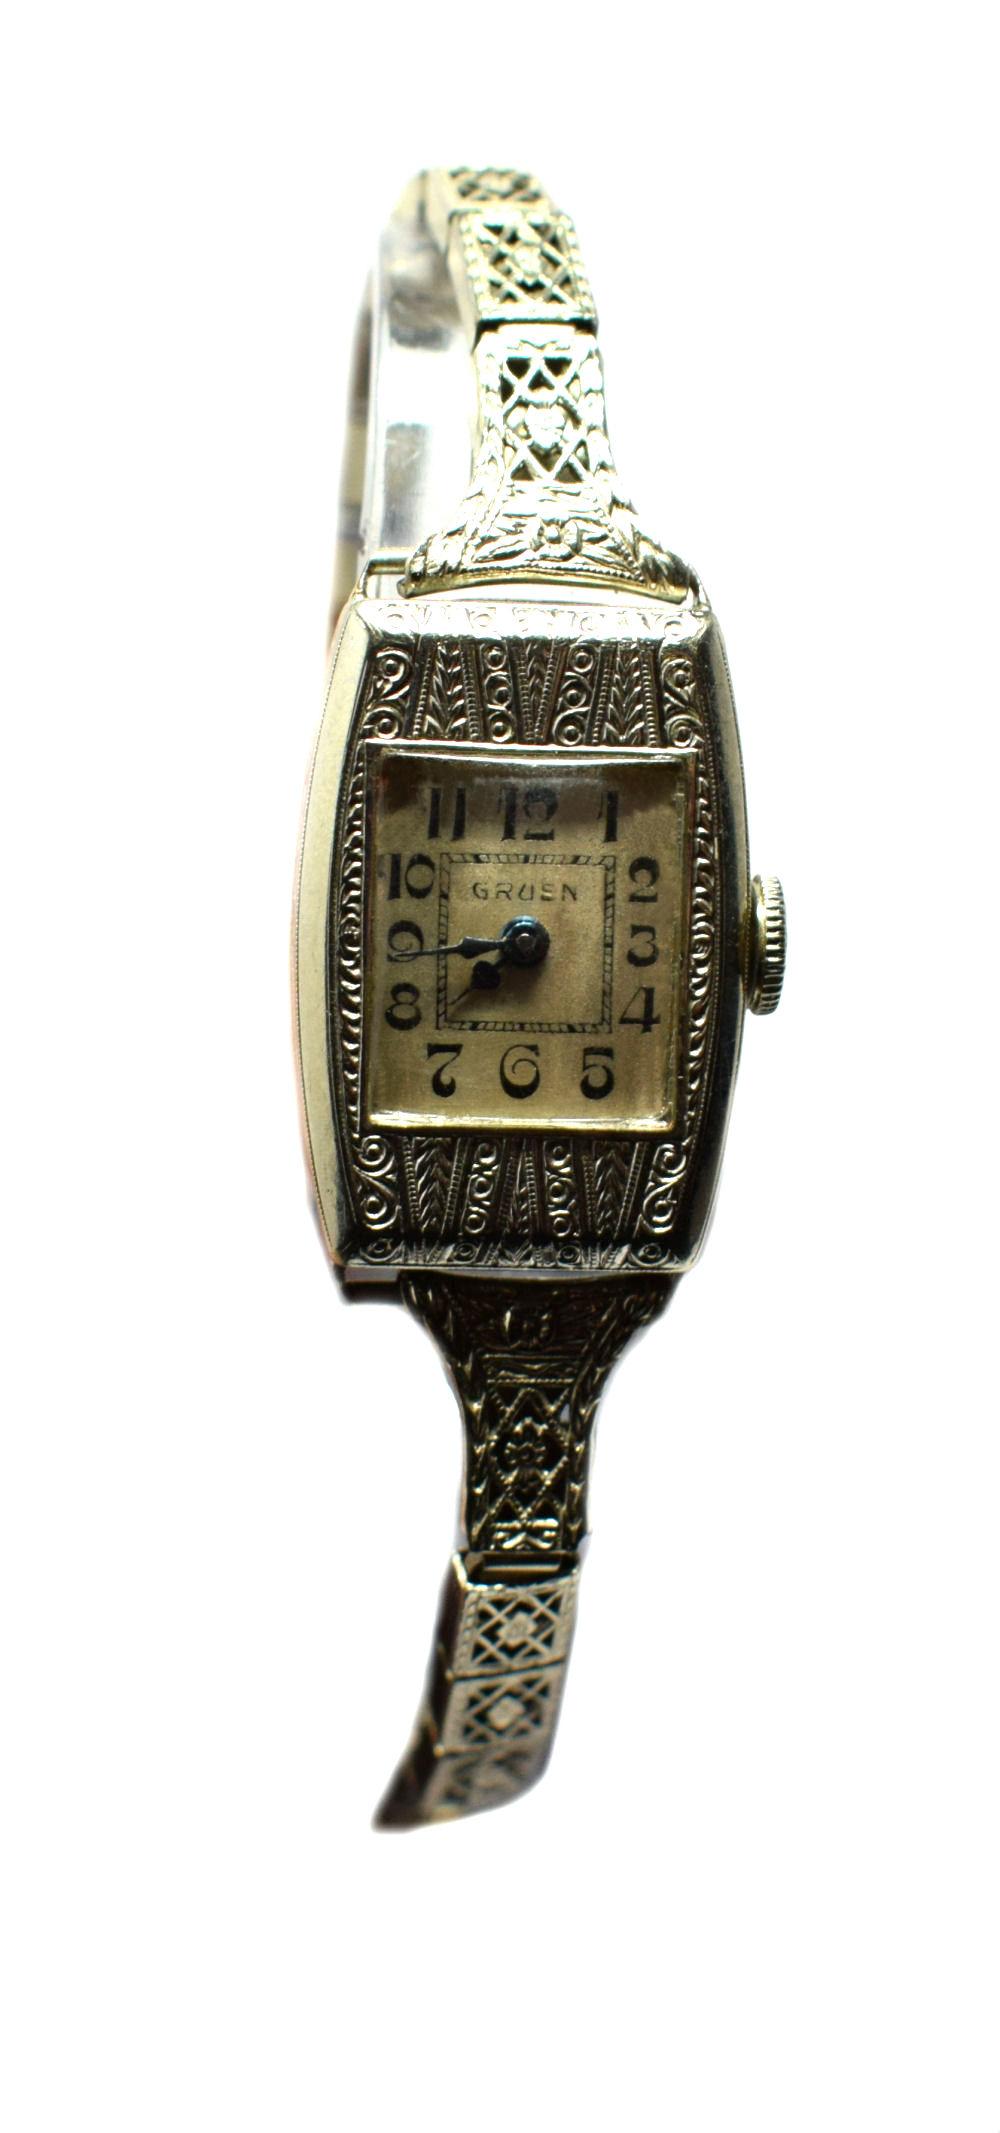 Beautiful 1930s Ladies Art Deco Wrist Watch by Gruen 2